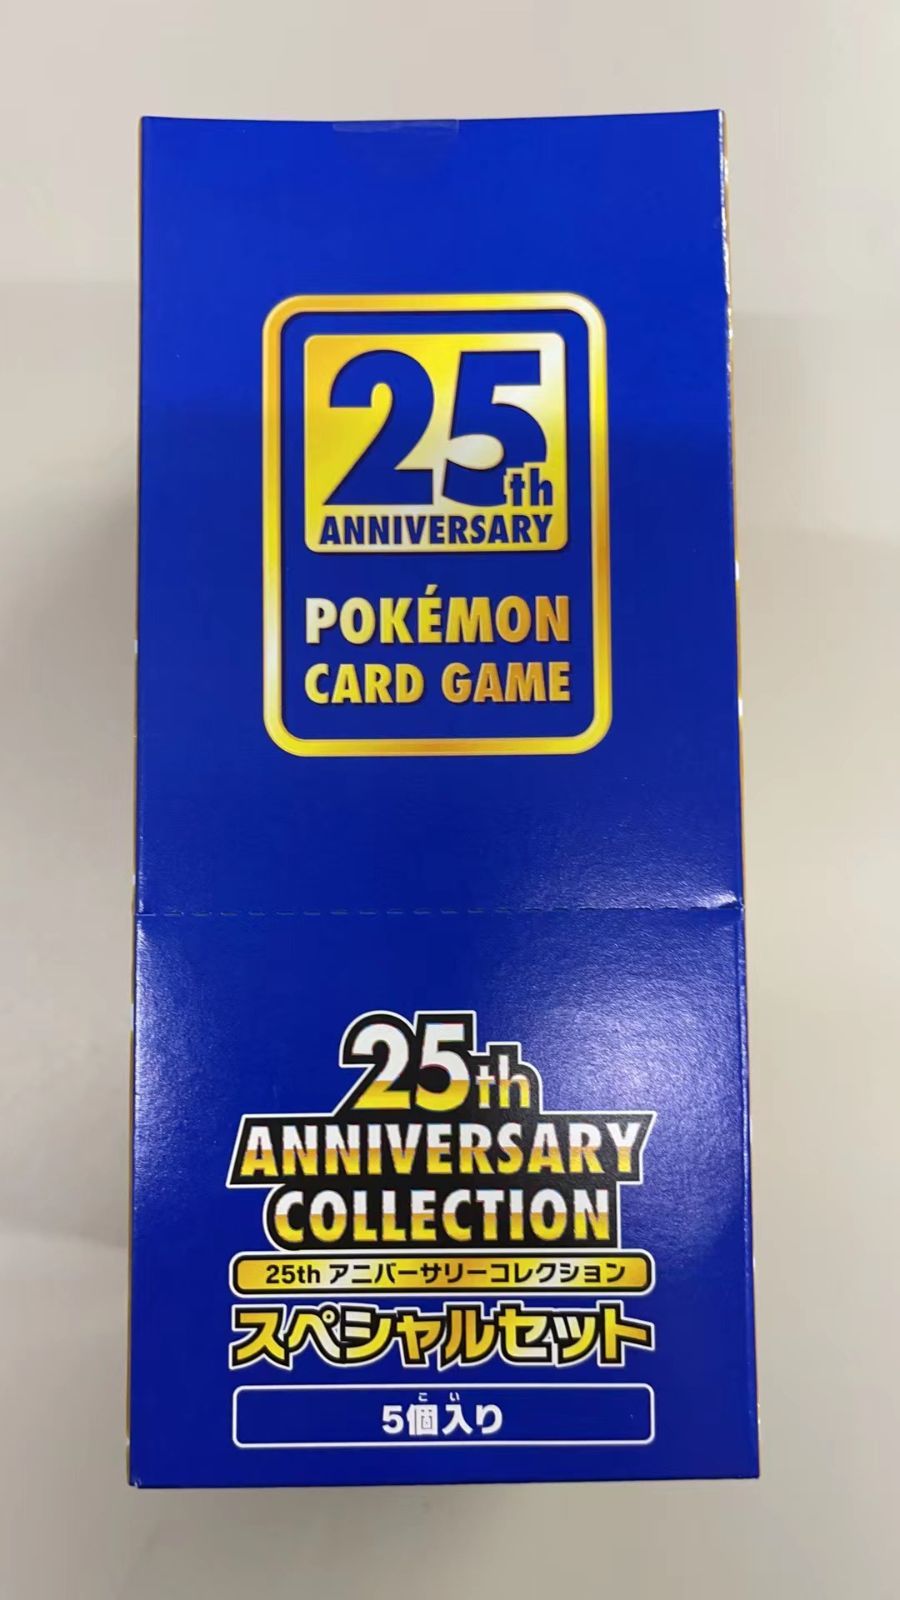 25th anniversary collection スペシャルセットエンタメ/ホビー